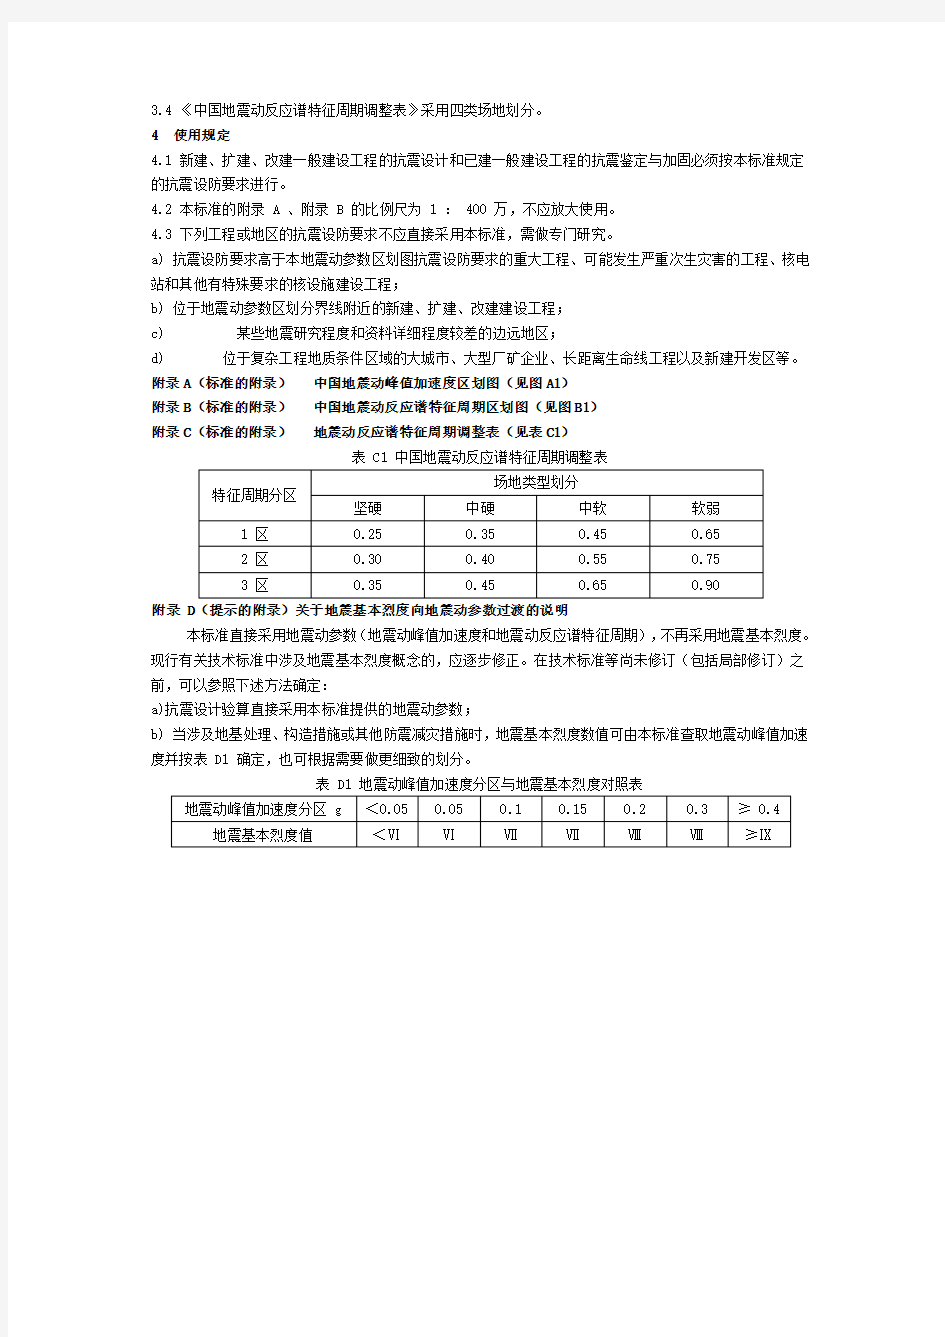 中国地震动参数区划图(GB18306-2001)文本